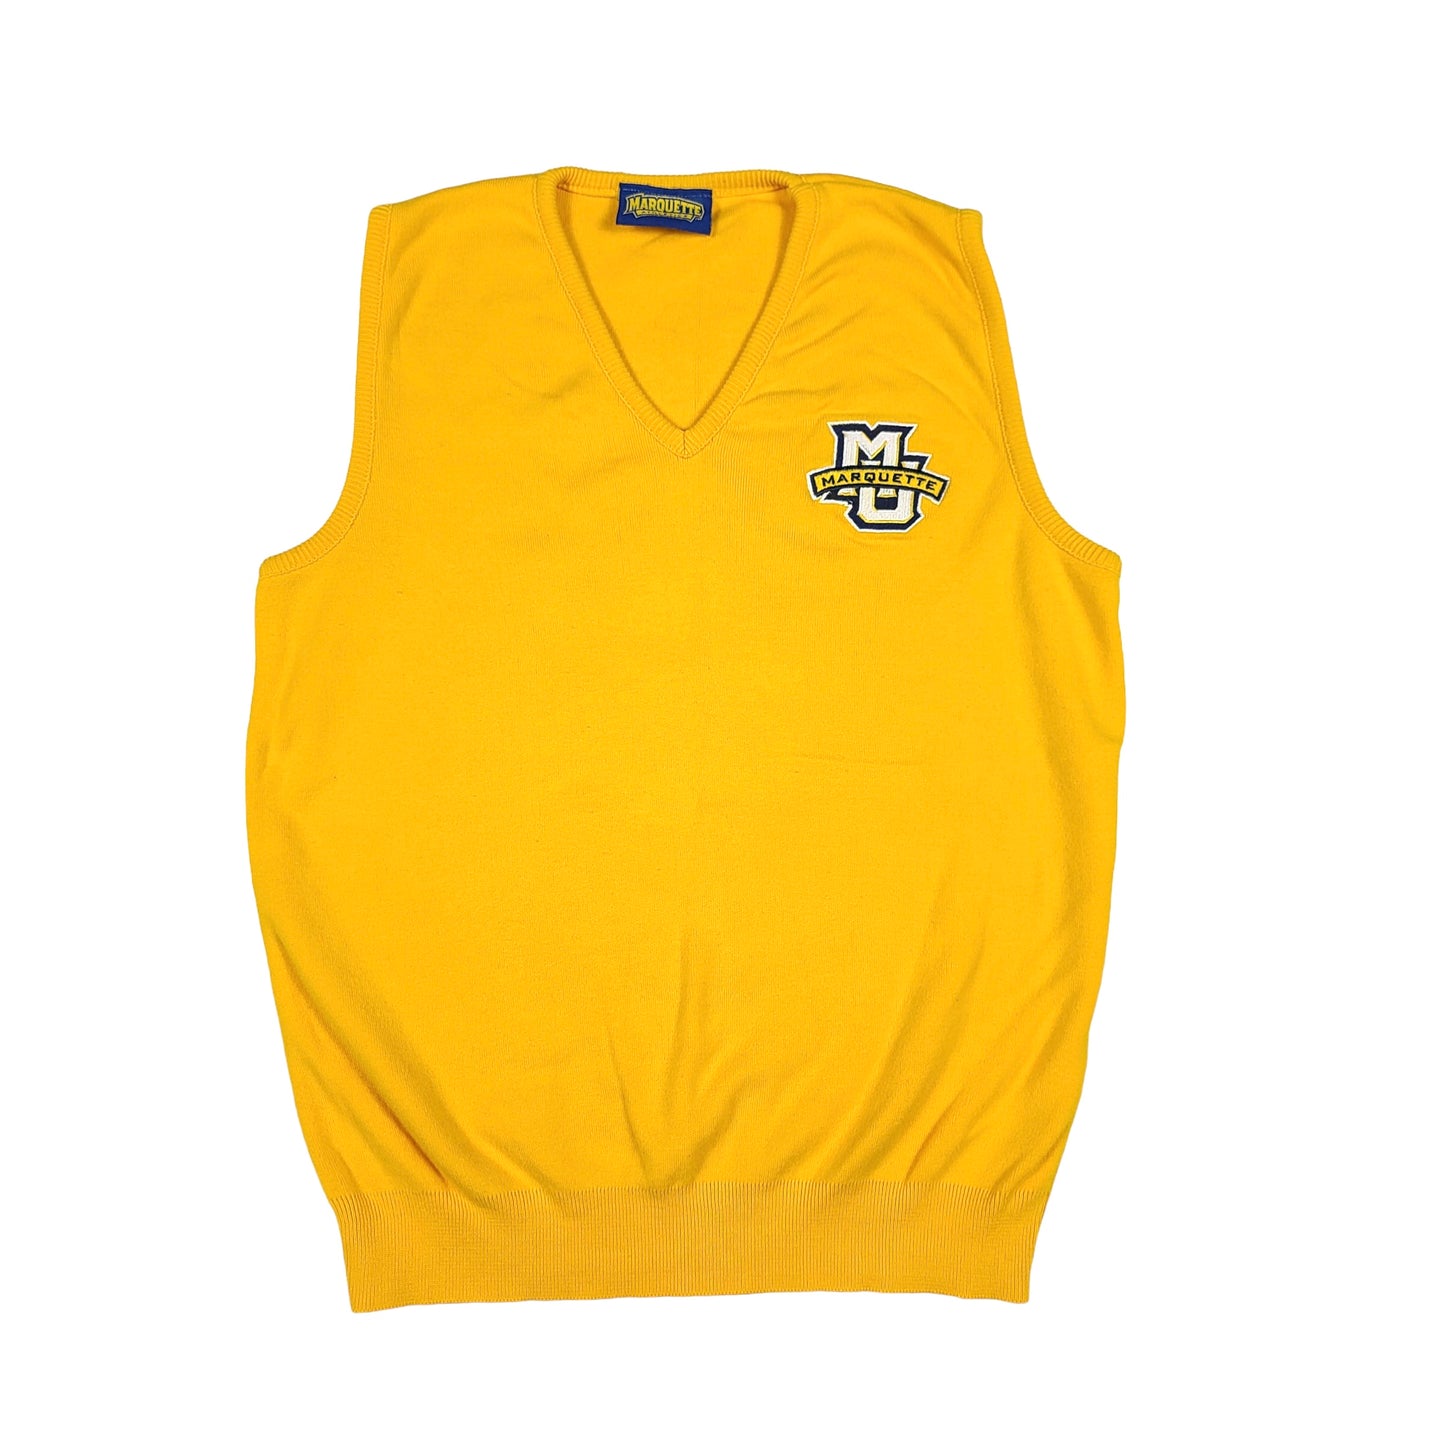 Marquette University Yellow Cotton Vest